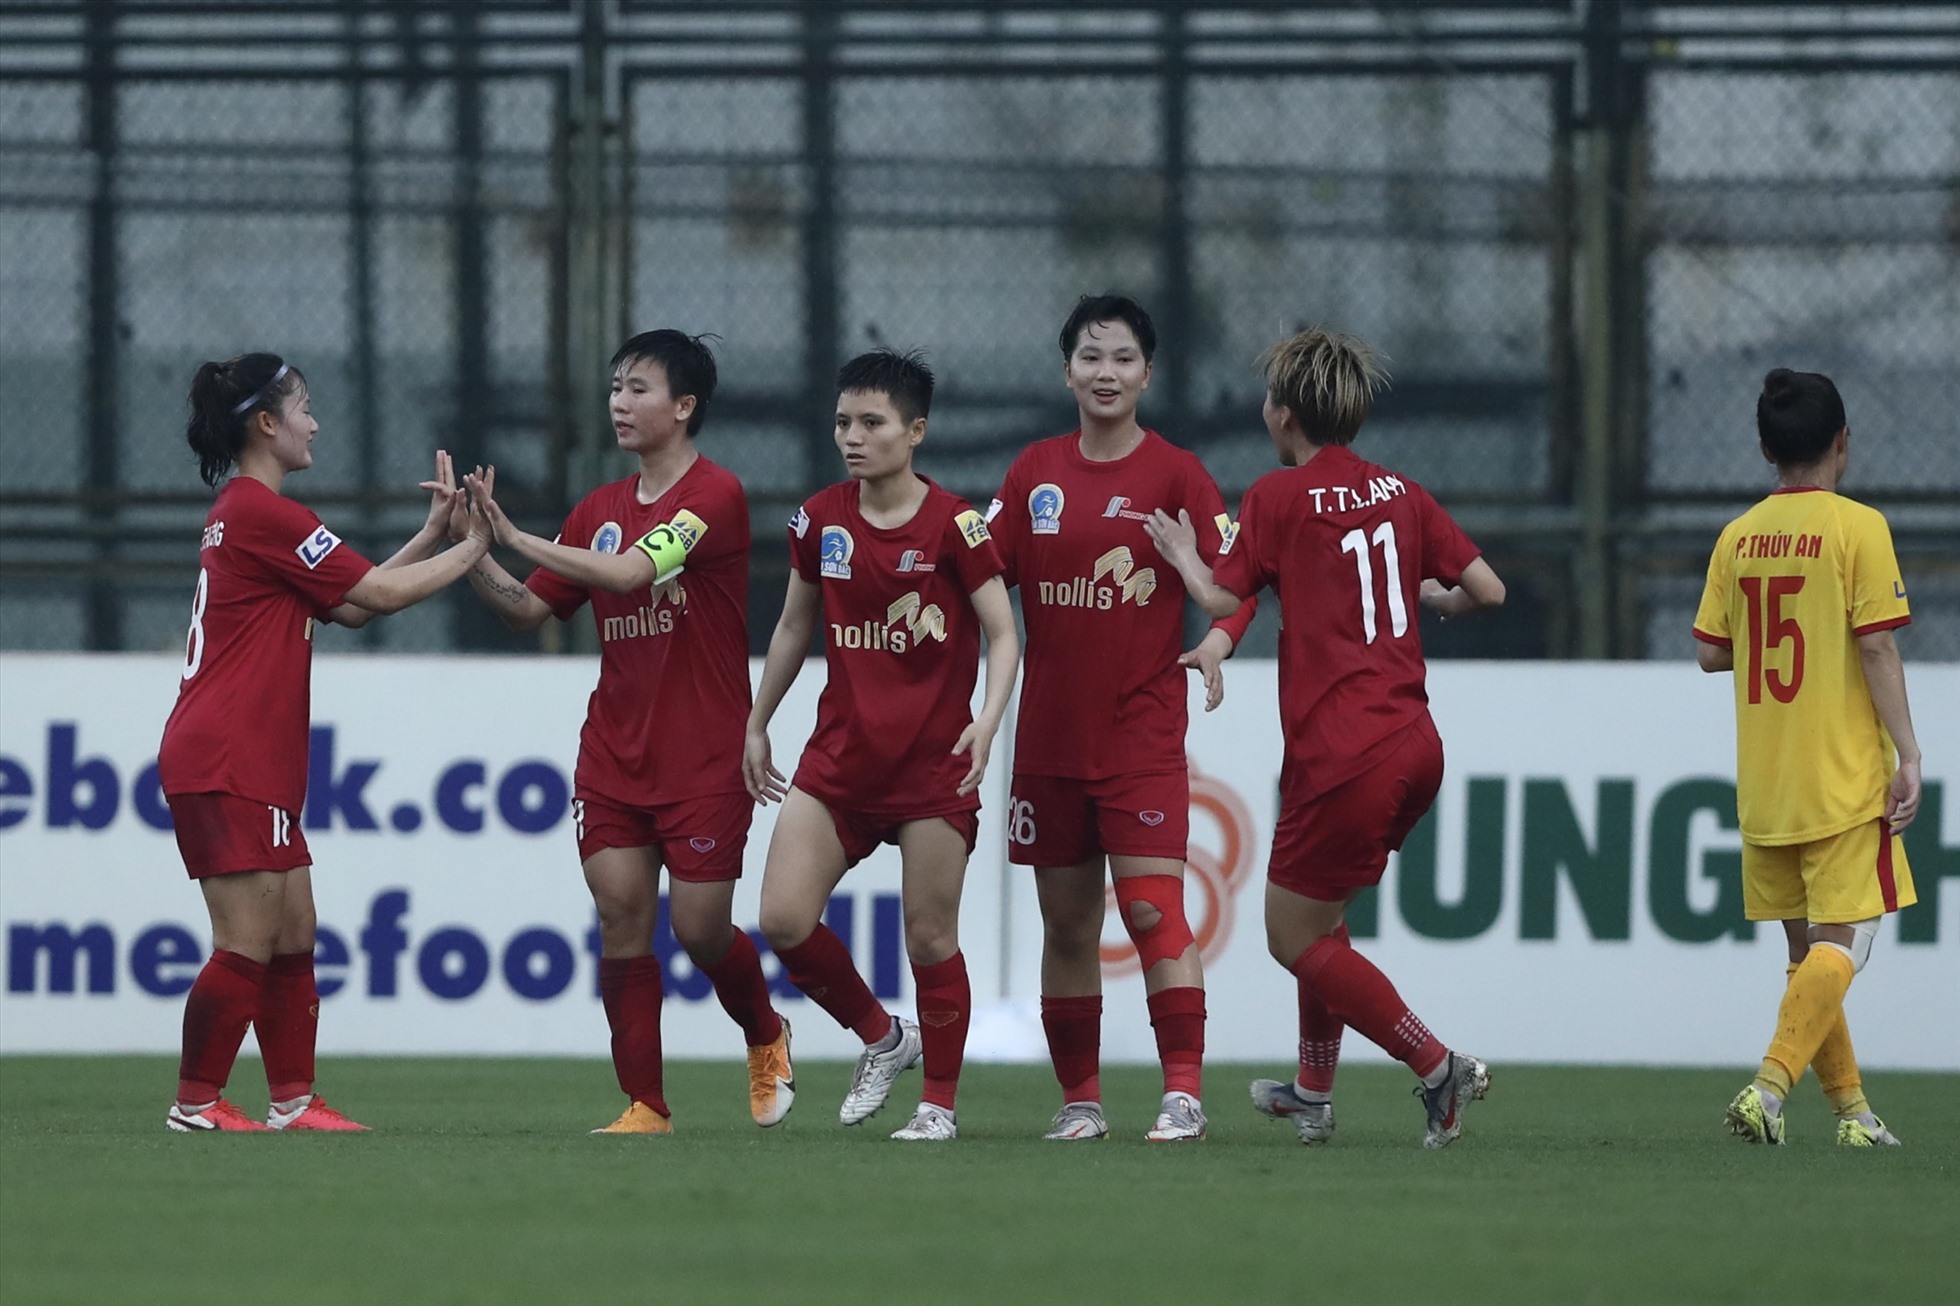 Tuyến Dung ghi bàn duy nhất giúp Phong Phú Hà Nam có trận thắng đầu tiên tại Giải nữ vô địch quốc gia - Cúp Thái Sơn Bắc 2022. Ảnh: VFF